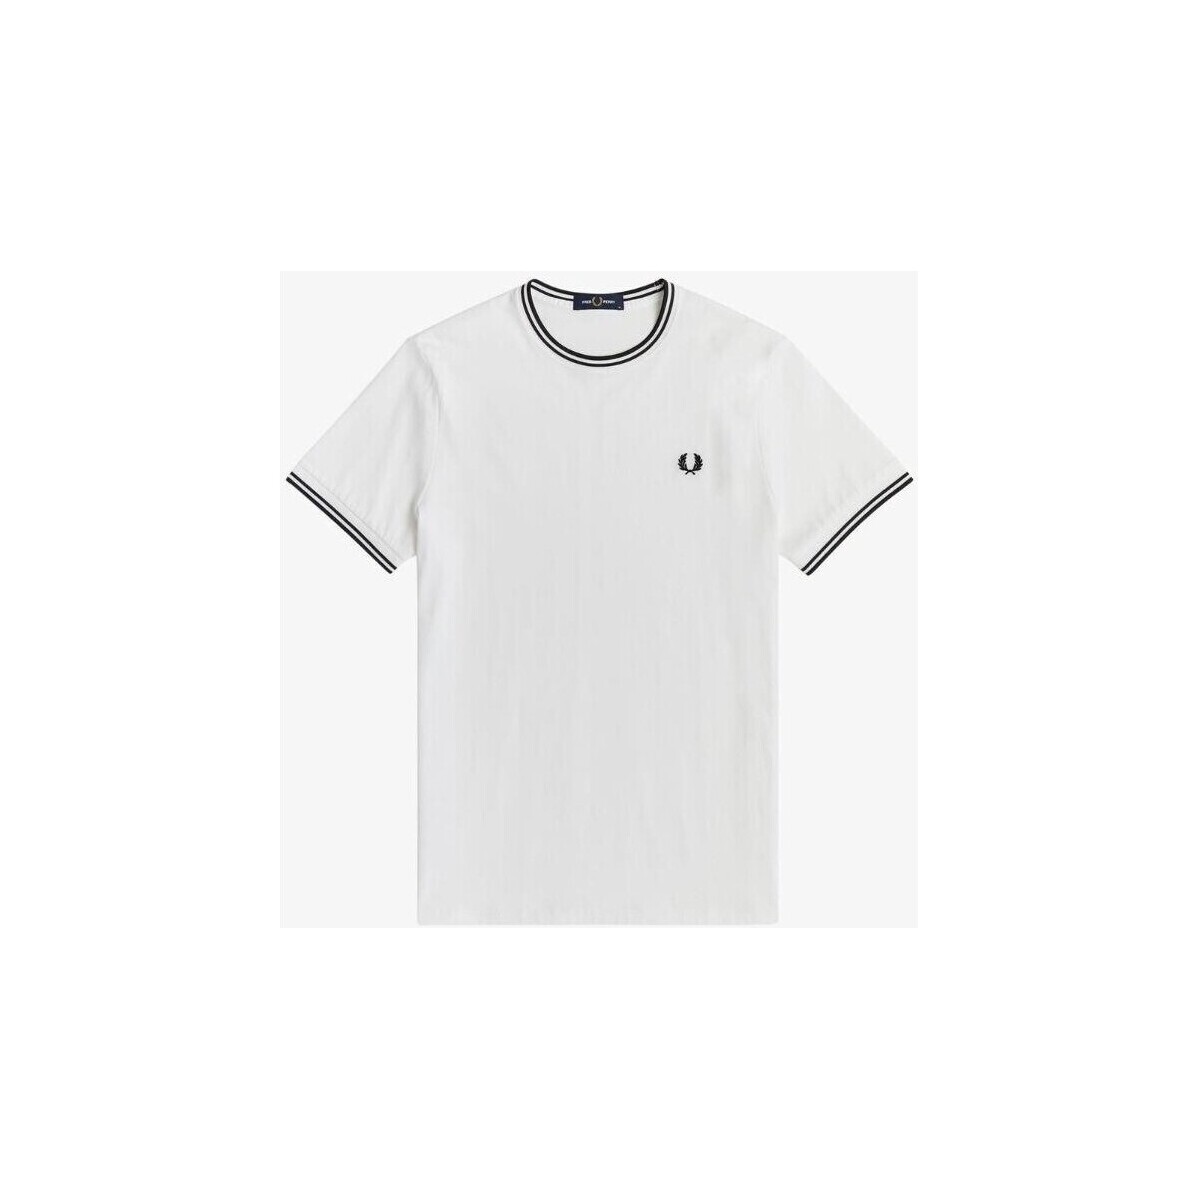 textil Herre T-shirts m. korte ærmer Fred Perry M3519 Hvid